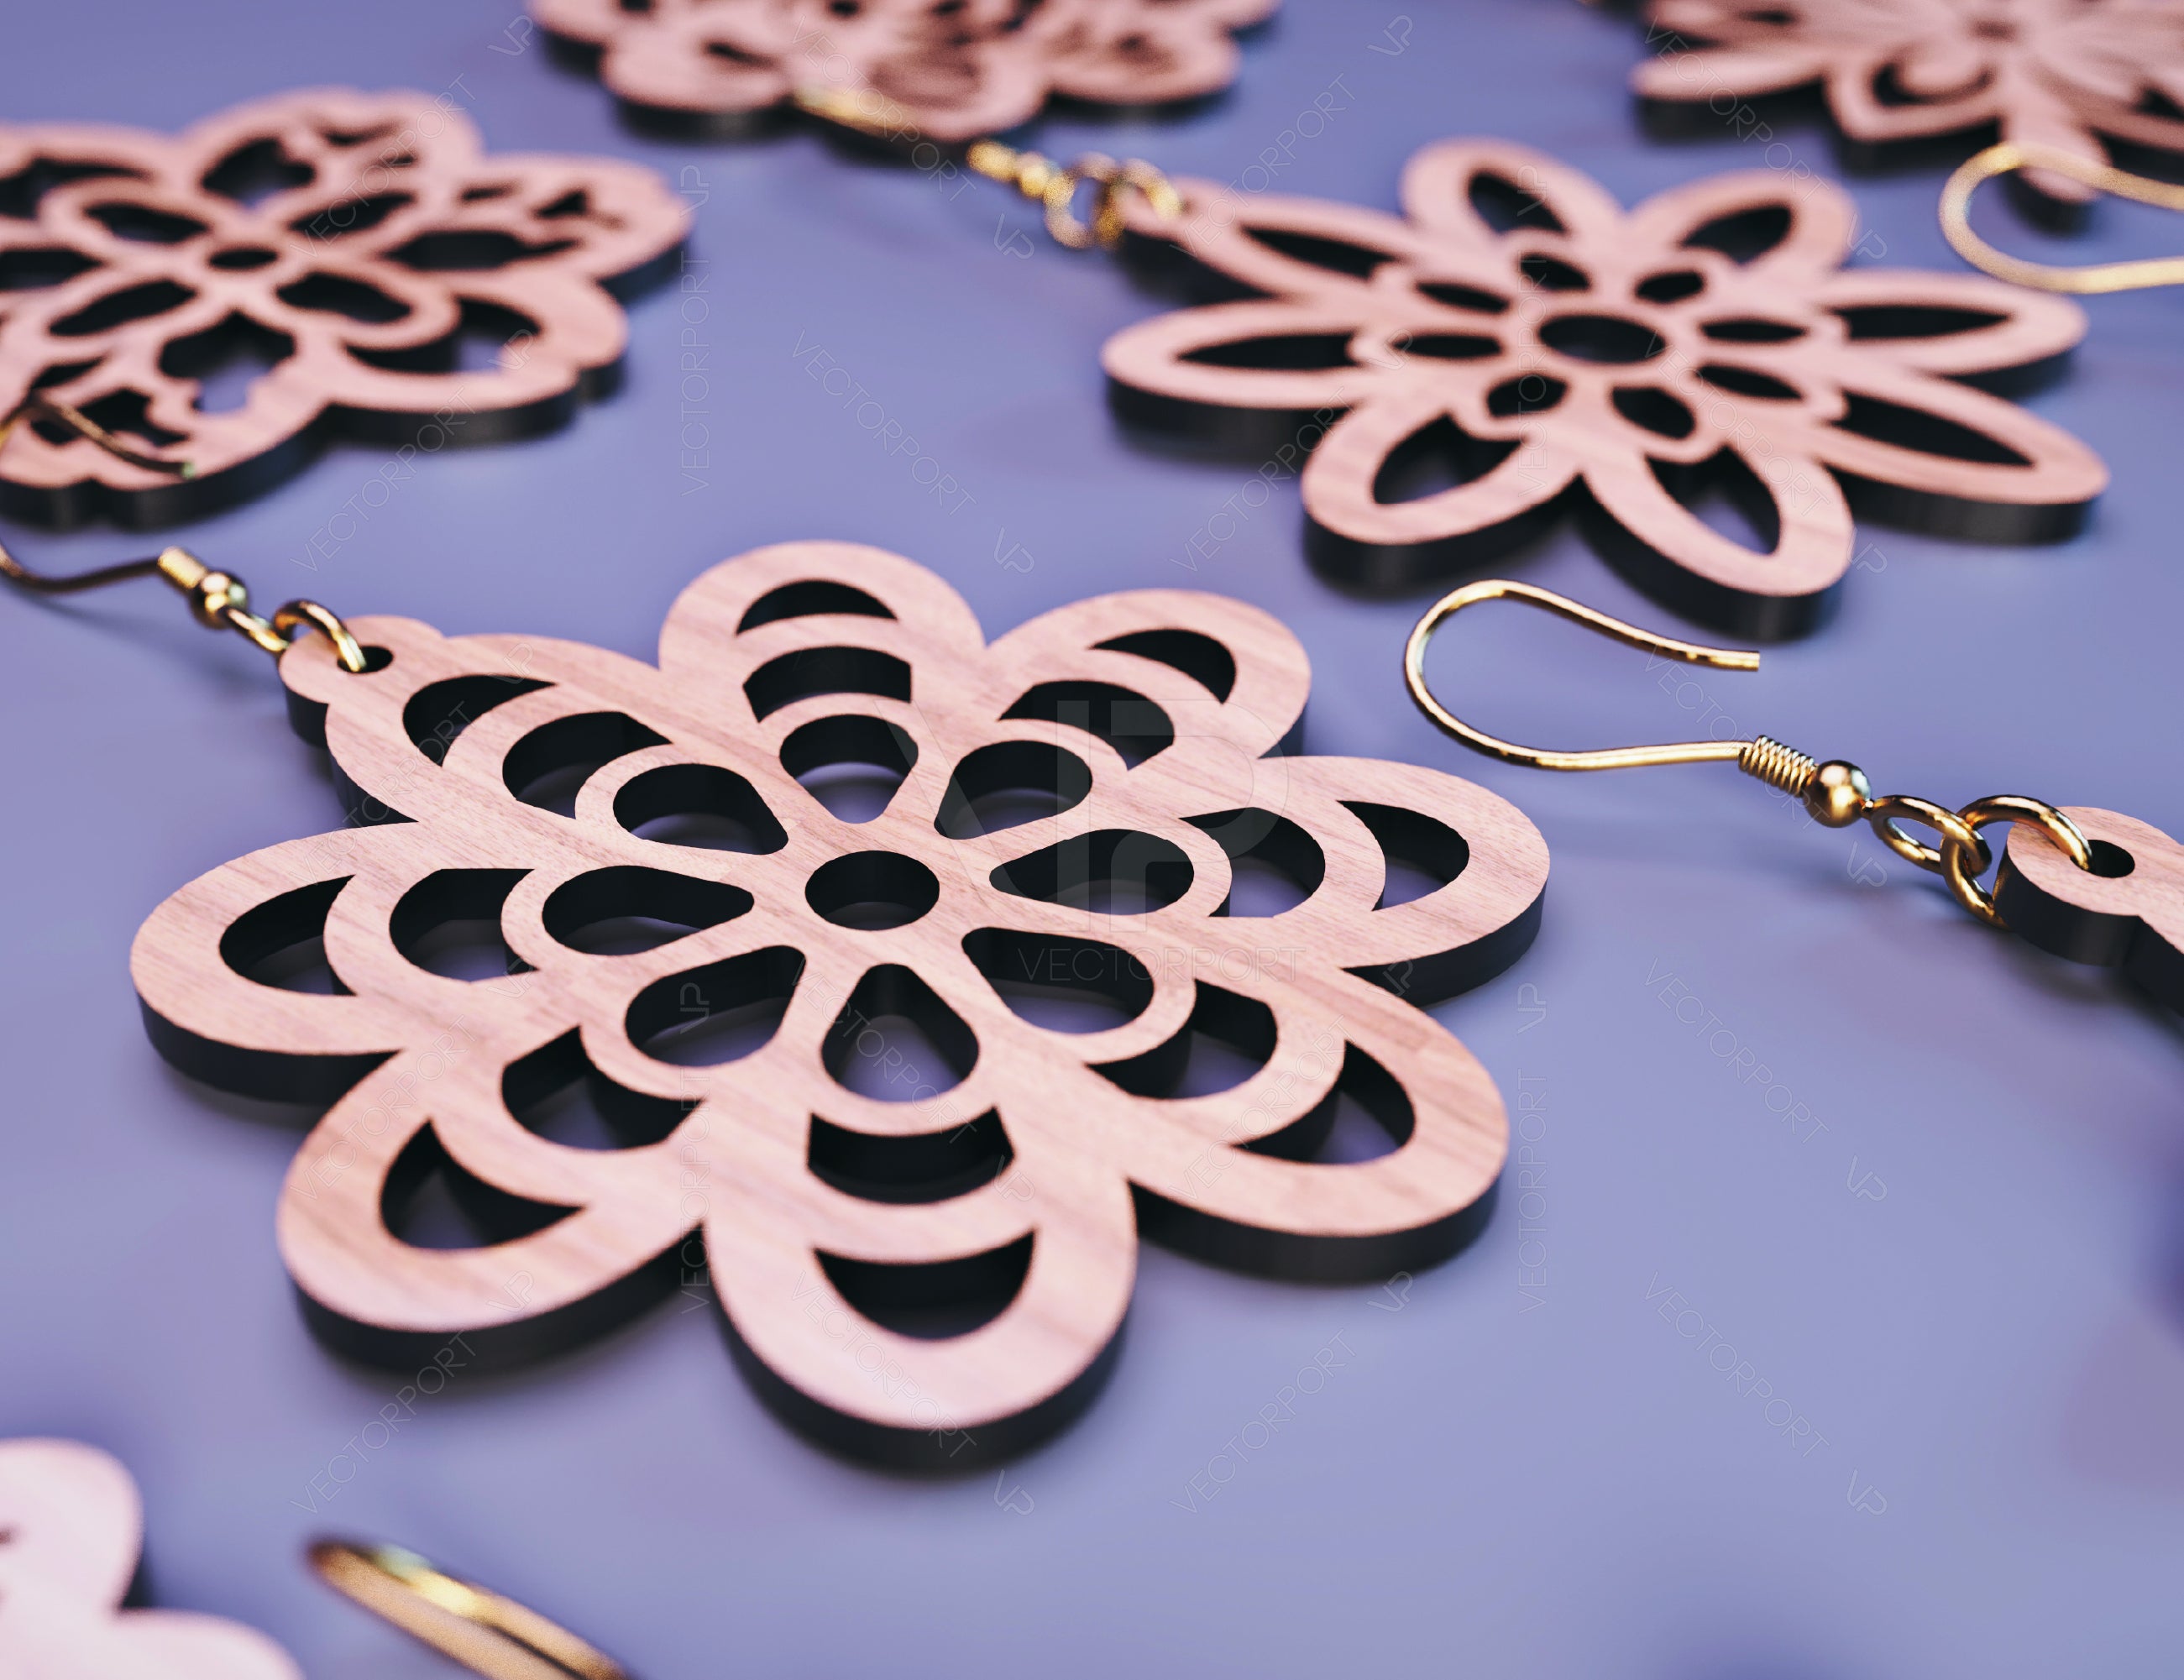 15 Flowers Earrings bundle Laser Cut tear drop templates for Women Jewelry Wooden Glowforge Pendants | SVG, DXF, AI |#122|